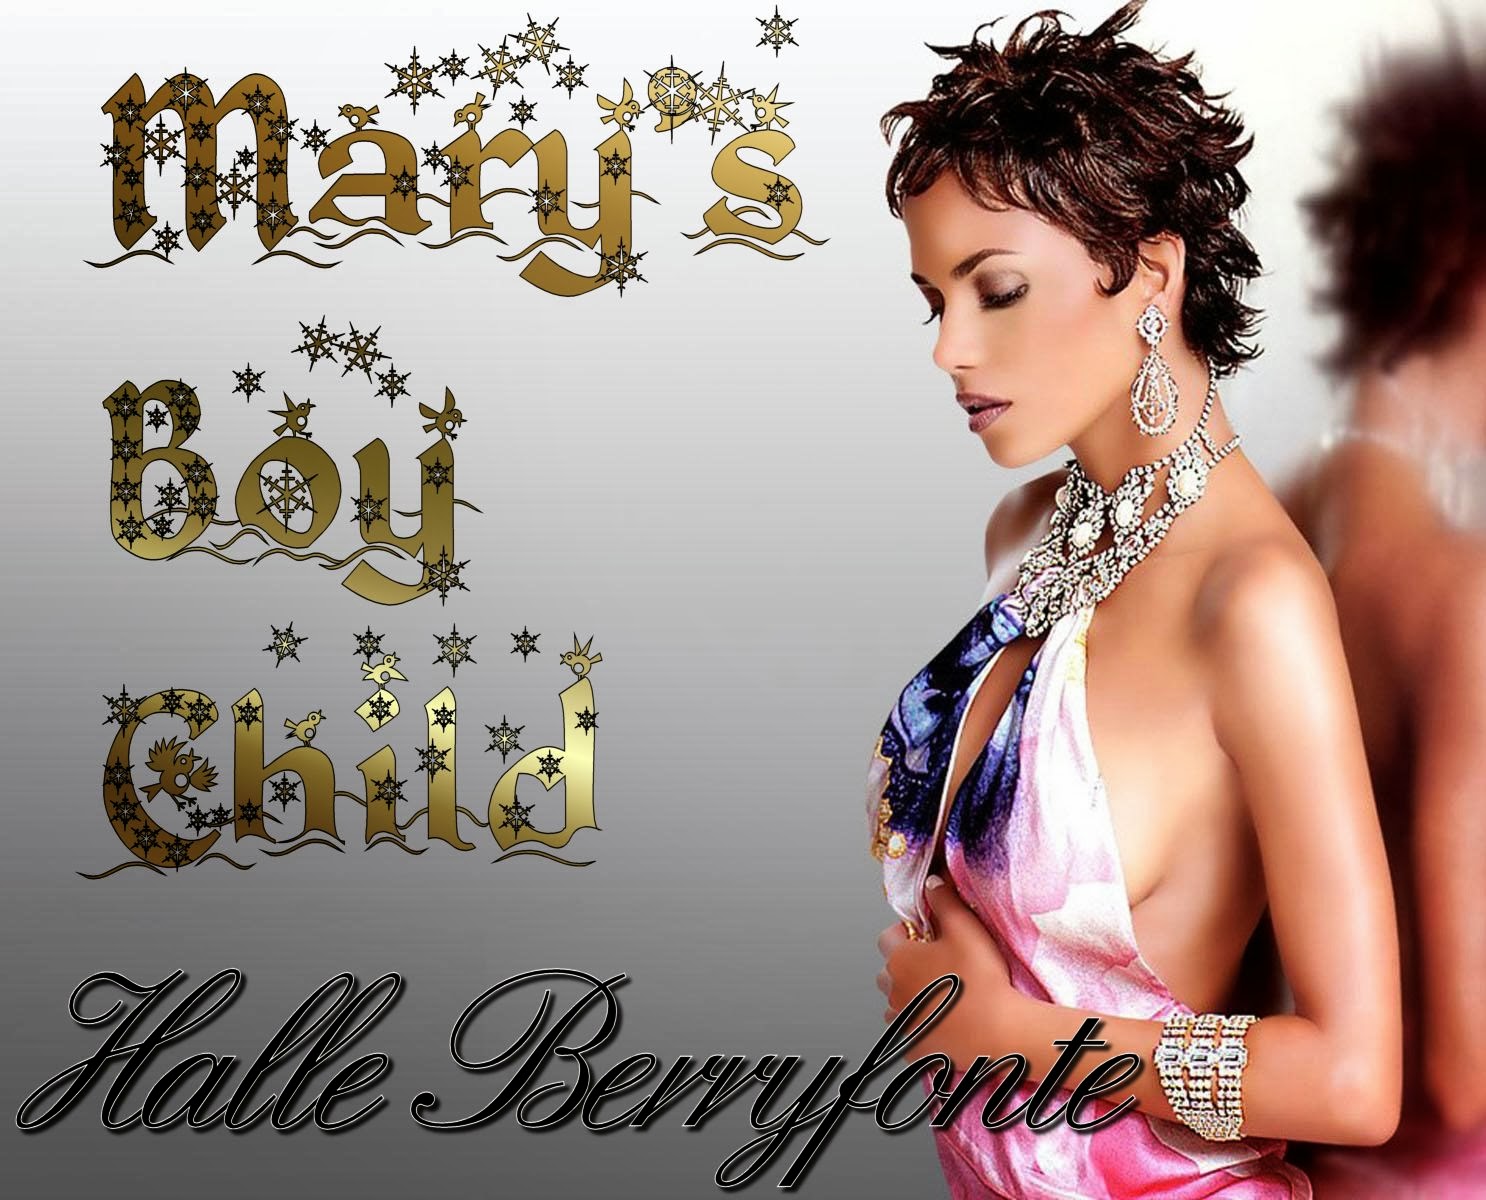 Halle Berryfonte - Mary's Boy Child